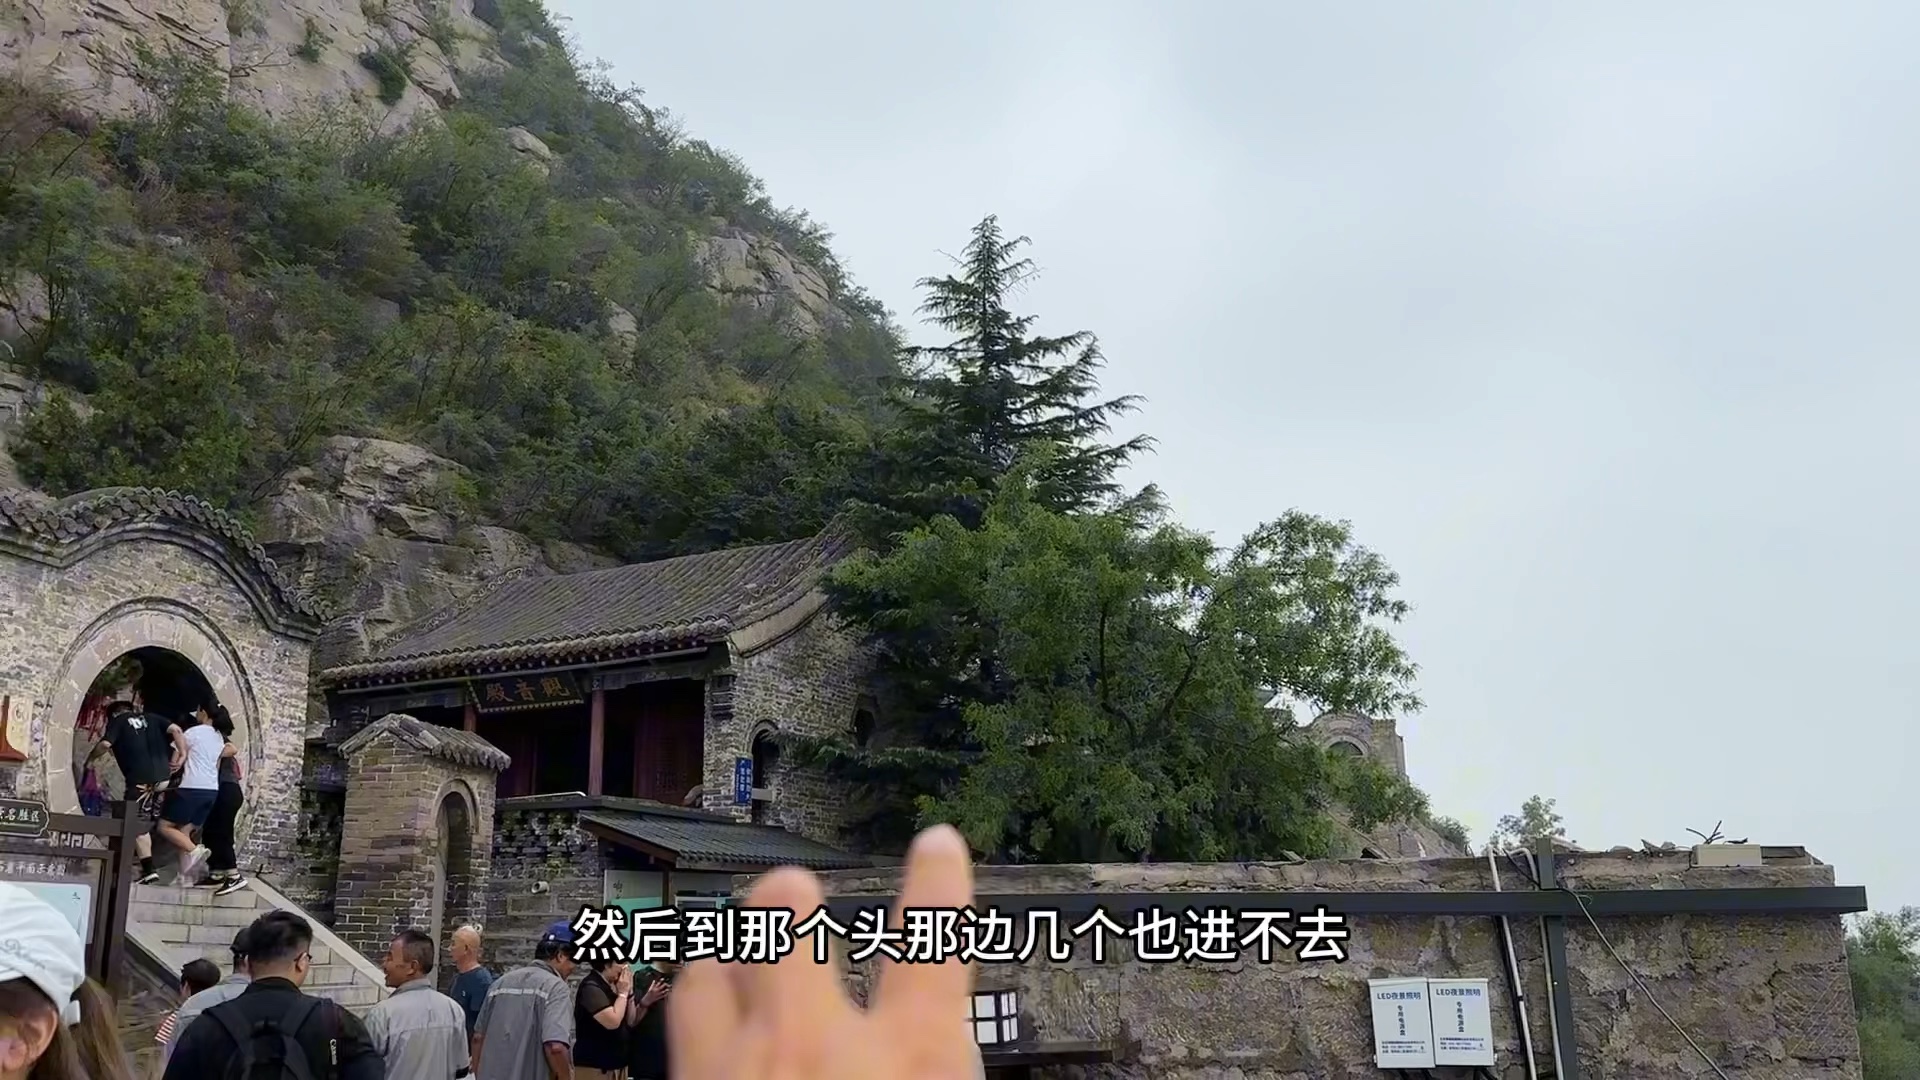 邯郸响堂山,中国第五大石窟